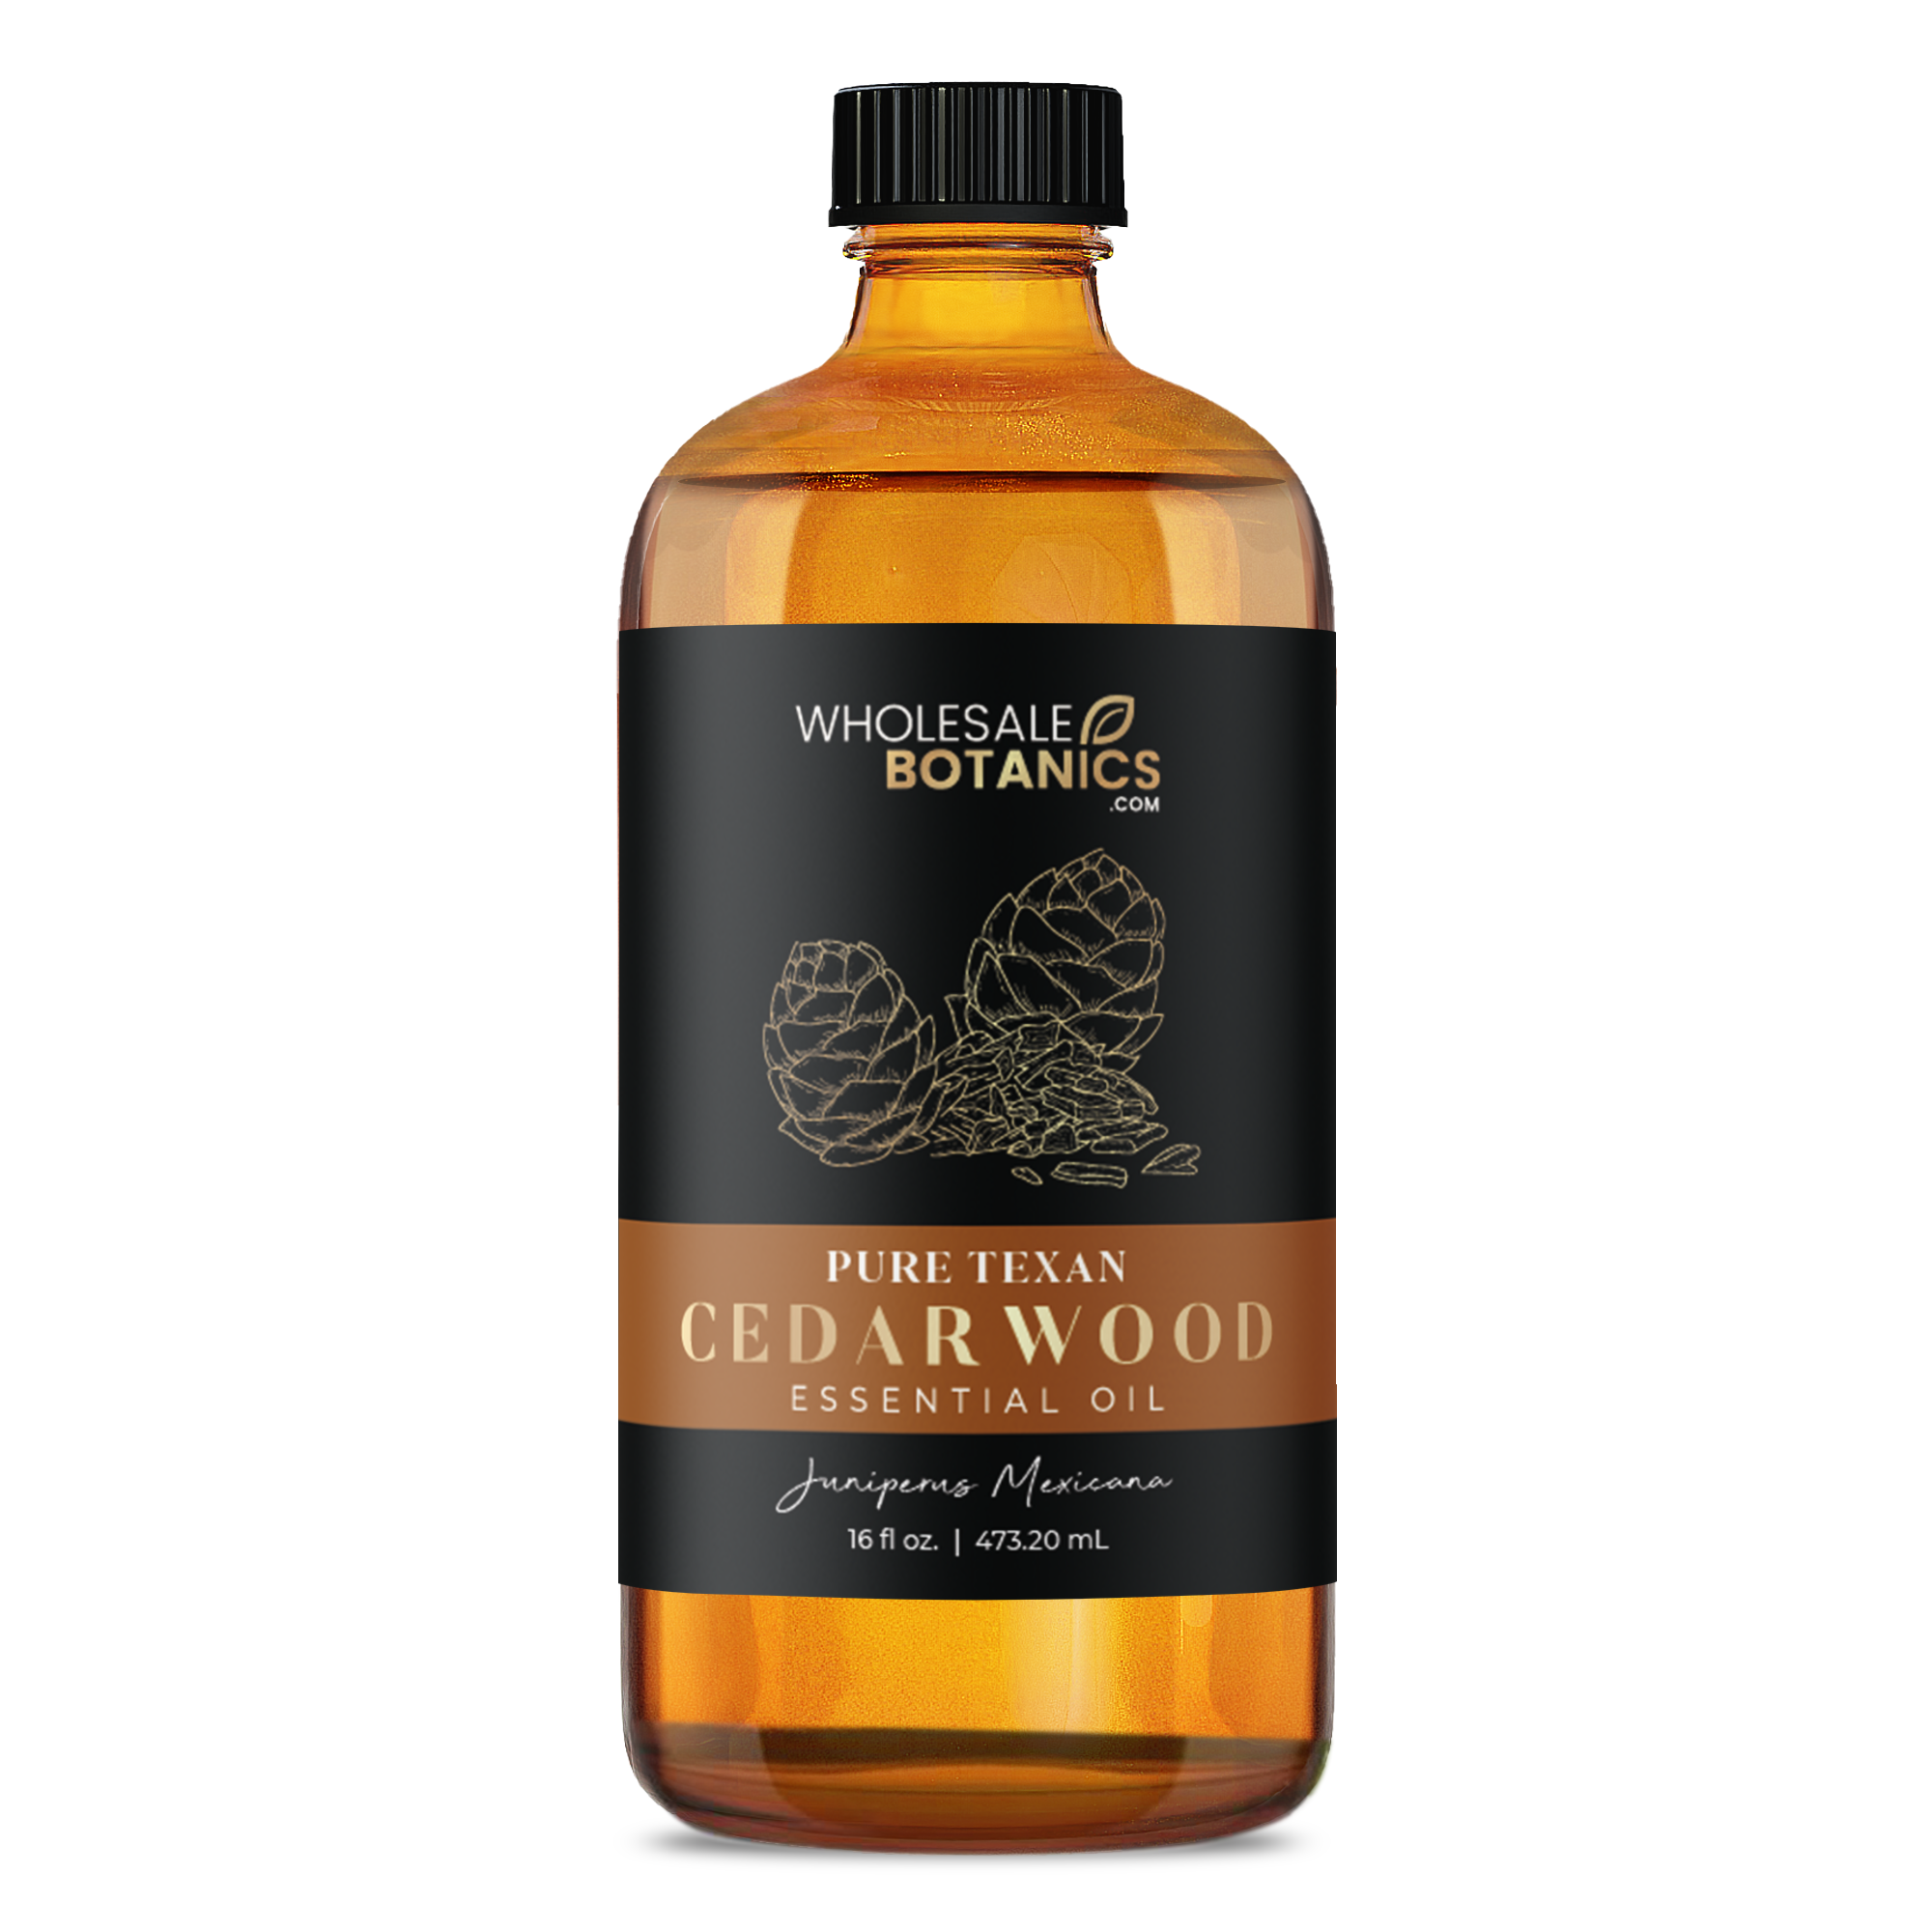 Cedarwood Essential Oil - Purity Texas Cedarwood - 16 oz